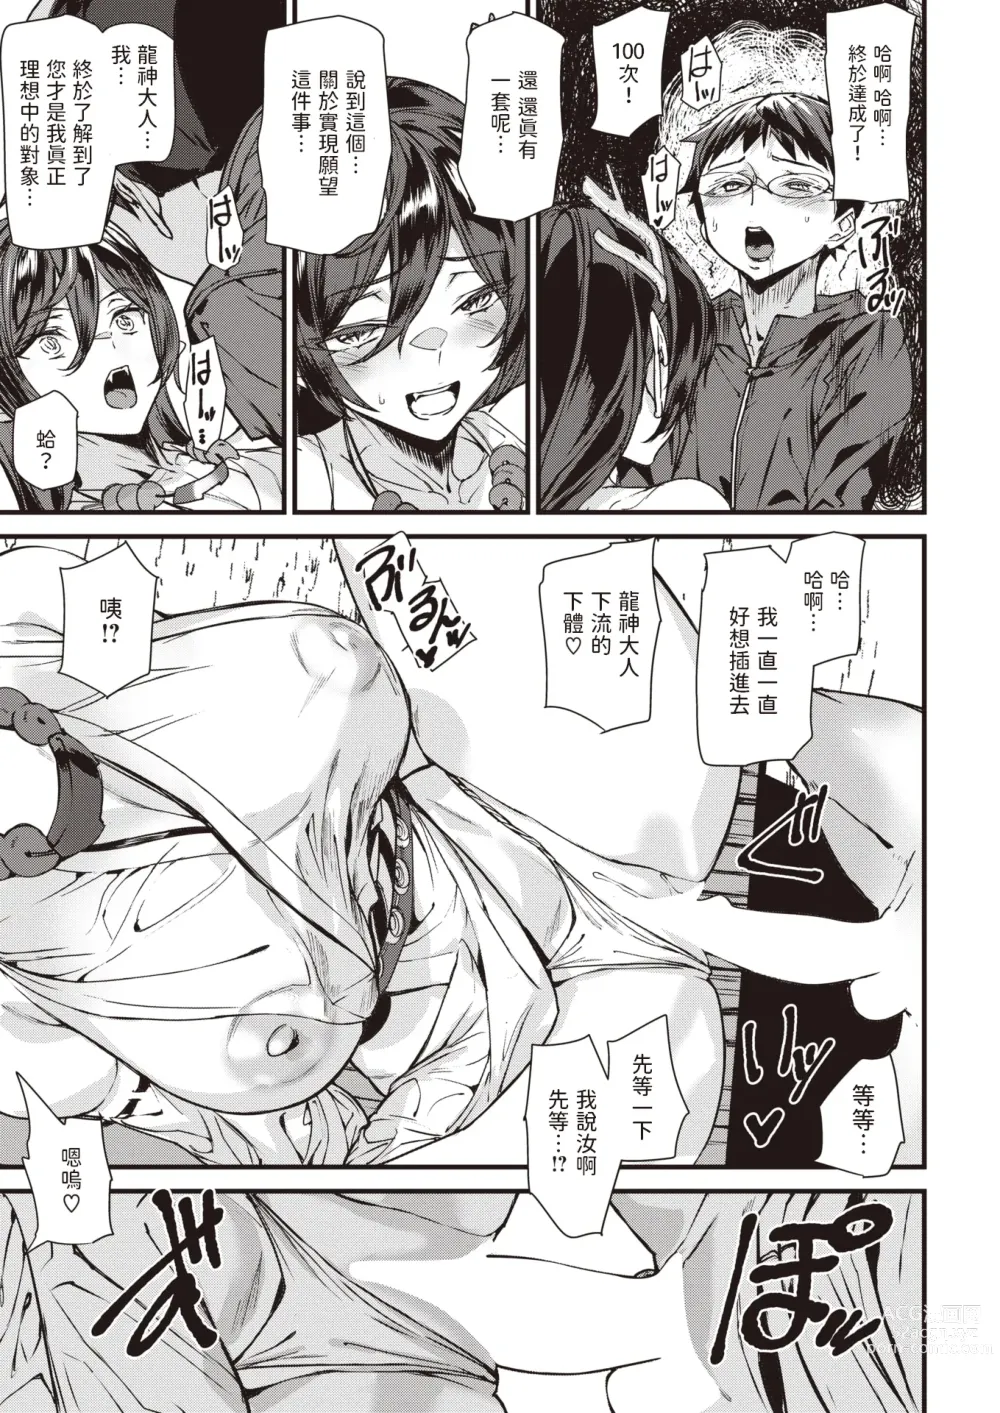 Page 13 of manga Ryuujin Kigan